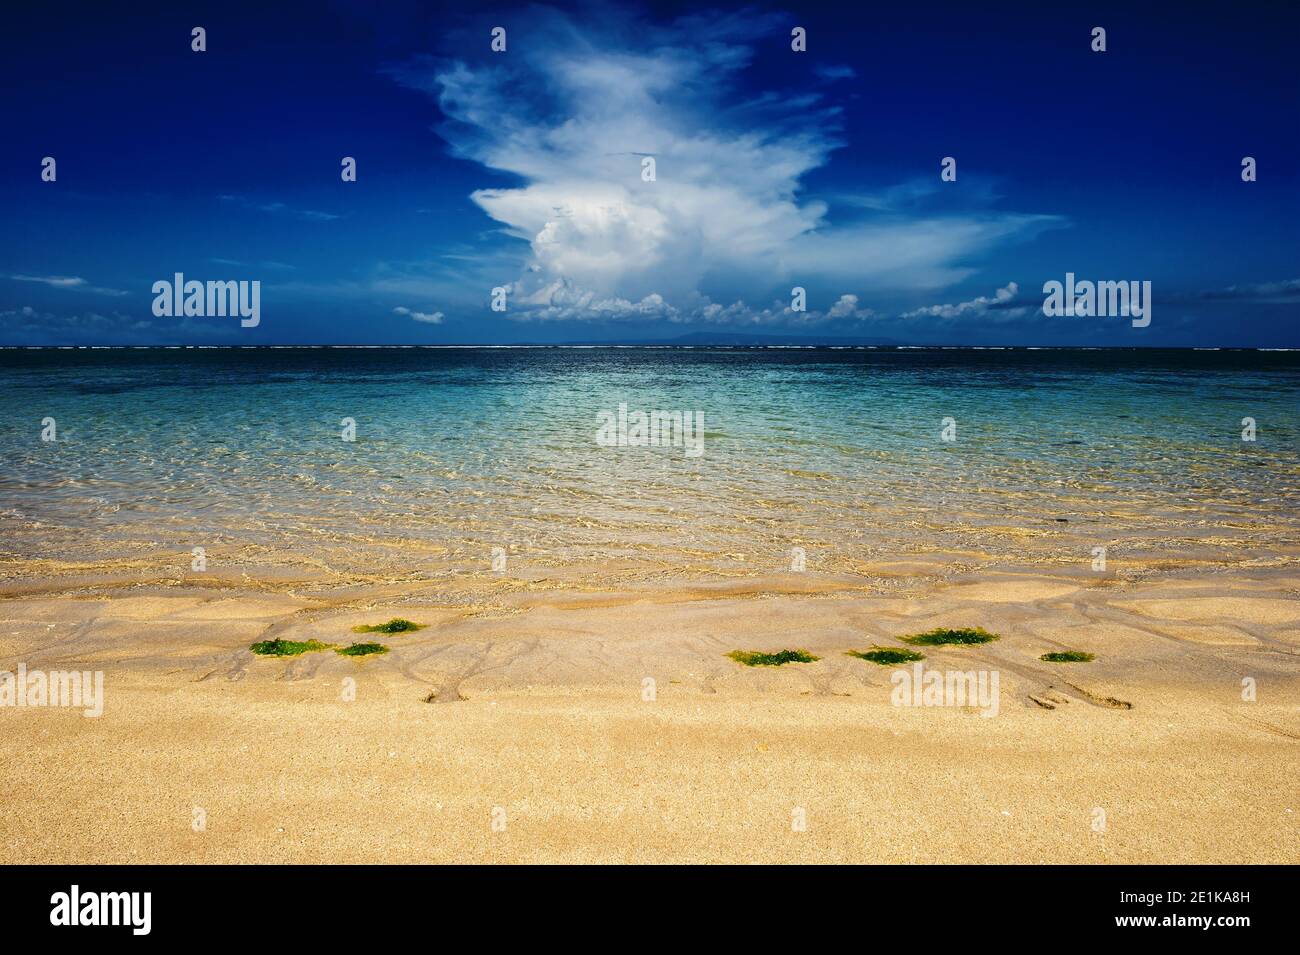 Bleu de l'eau de mer, ciel nuageux spectaculaire, plage de sable. Paysage de voyage Banque D'Images